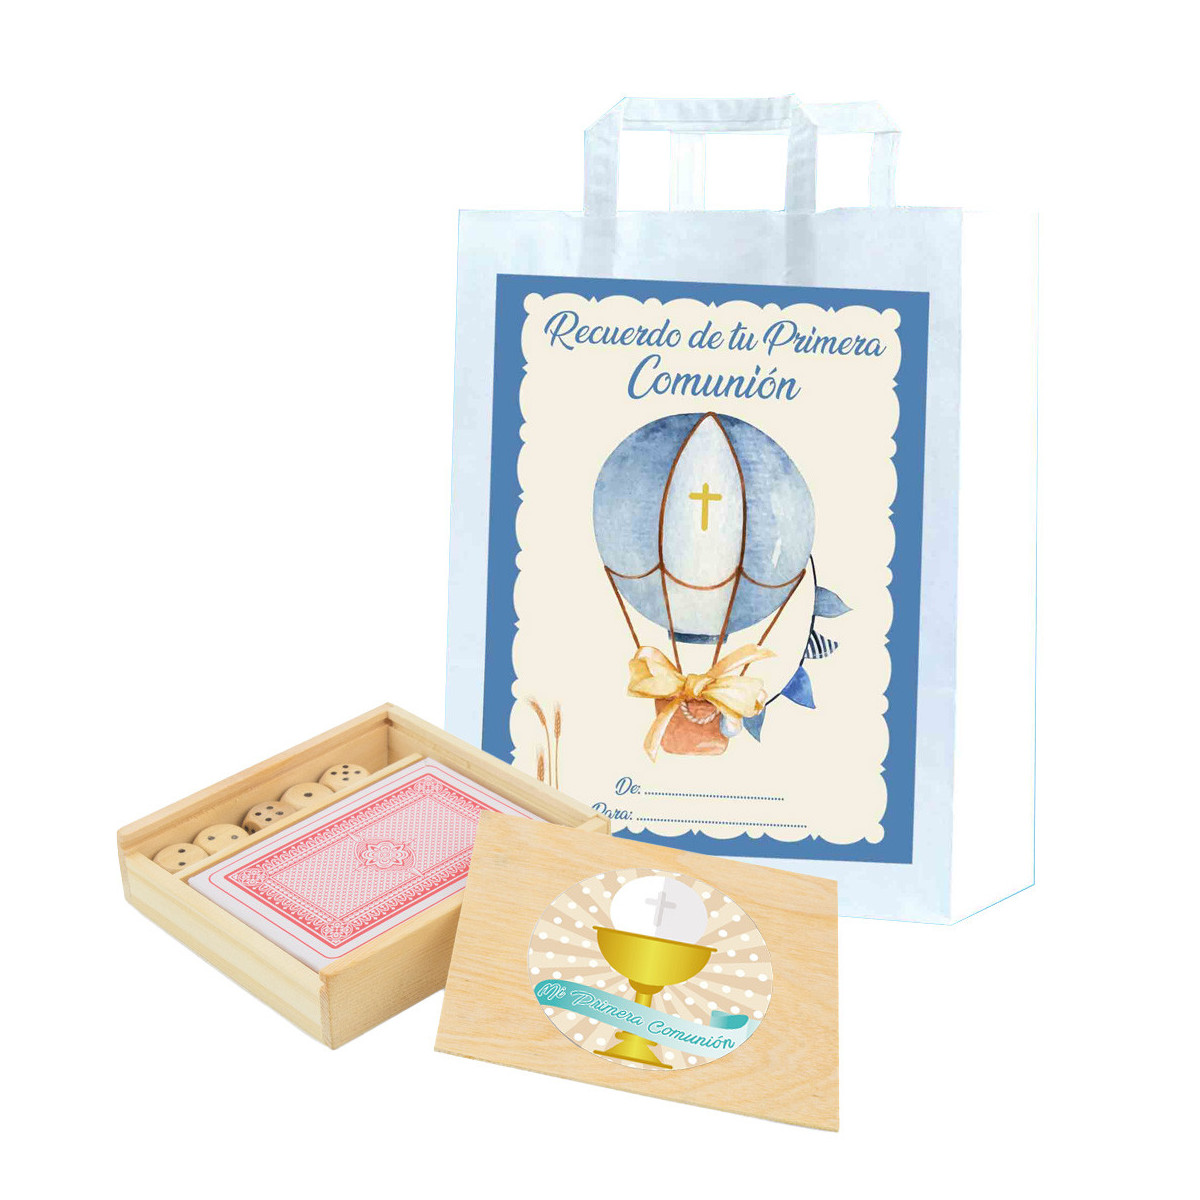 Cartas y dados en caja de madera personalizada con adhesivos de comunión y bolsa de regalo especial comunión